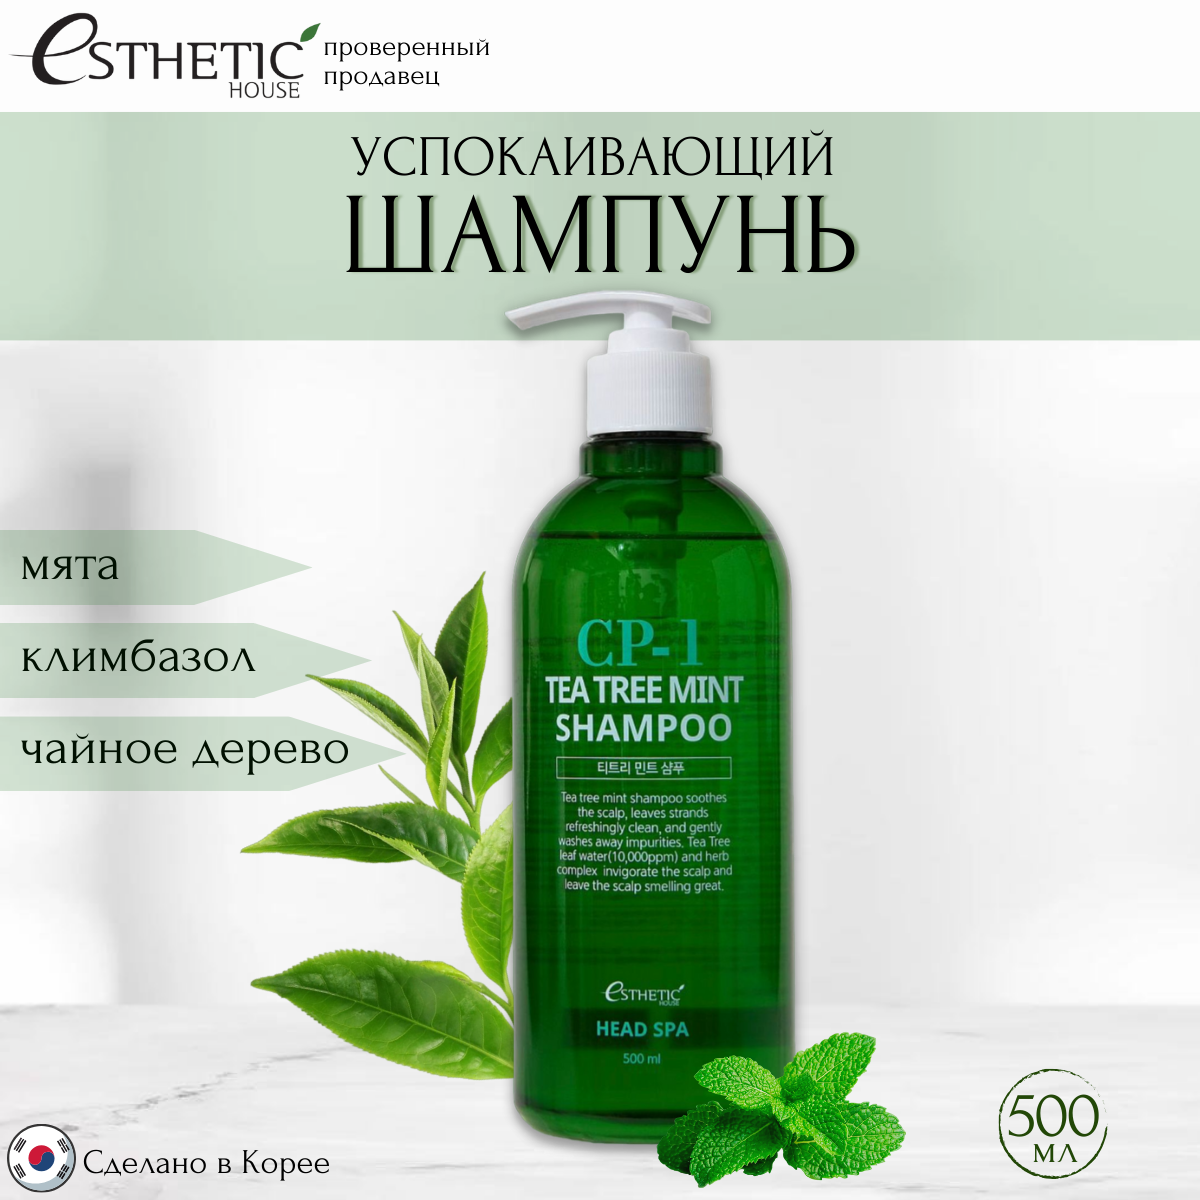 Шампунь Esthetic House Cp-1успокаивающий Tea Tree Mint Shampoo 500 Мл premium house чистящее средство для пола очистка и восстановление 1000